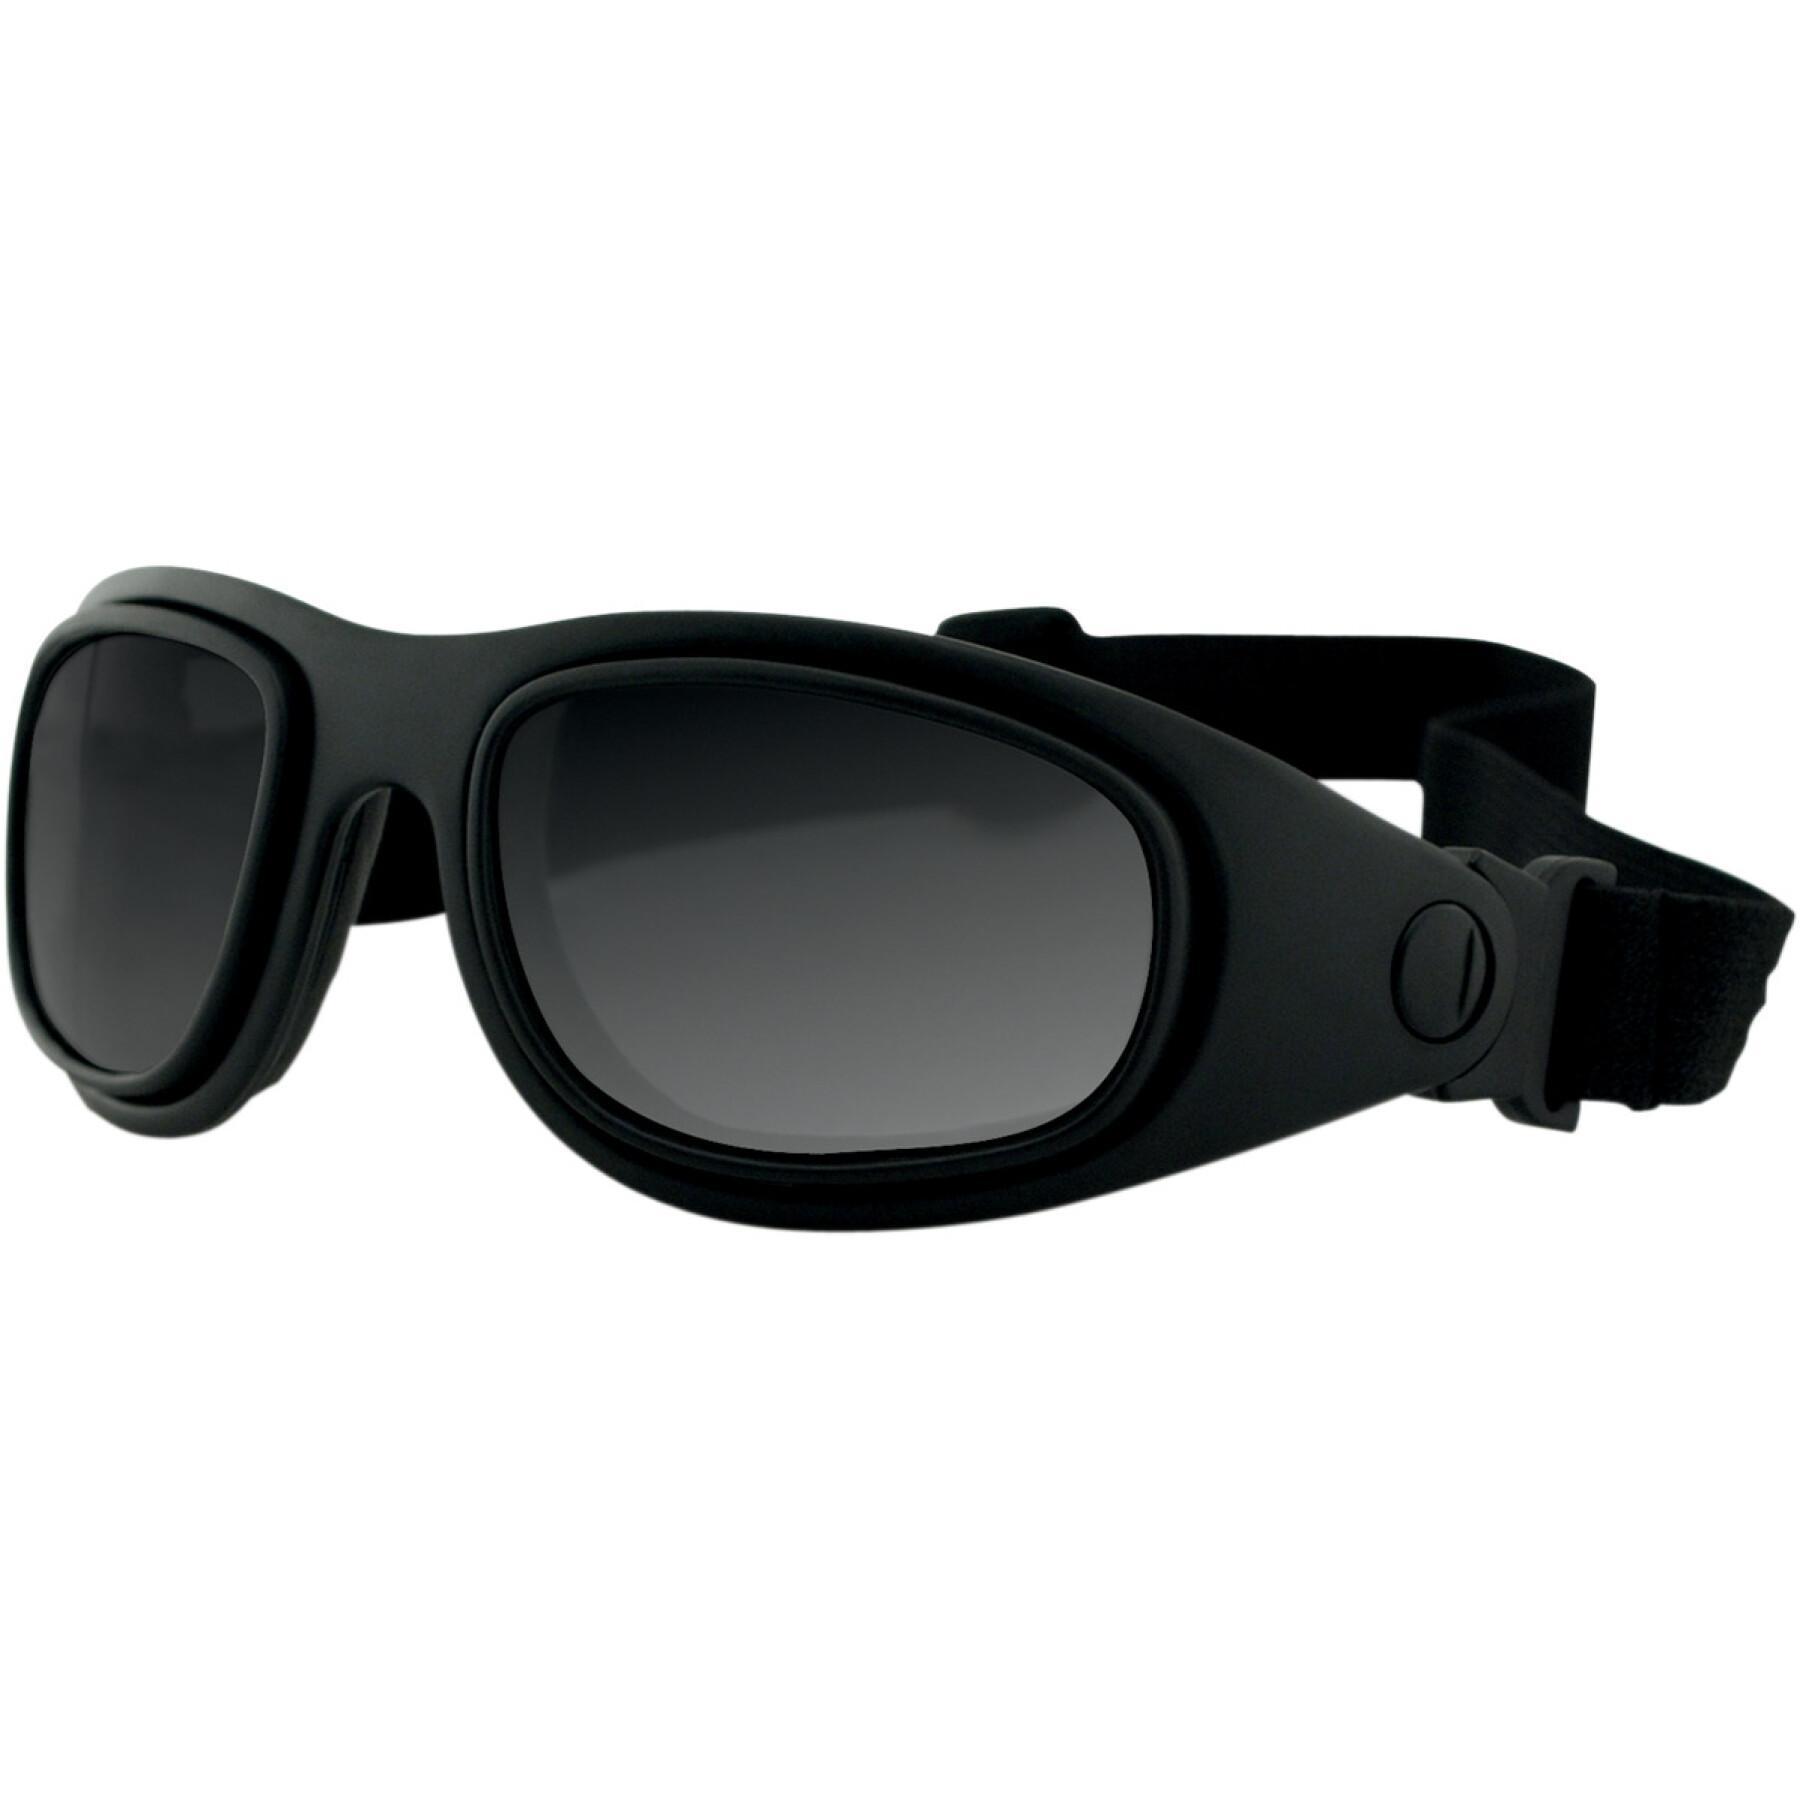 Konvertible Motorradbrille mit austauschbaren Gläsern Bobster Sport & Street 2